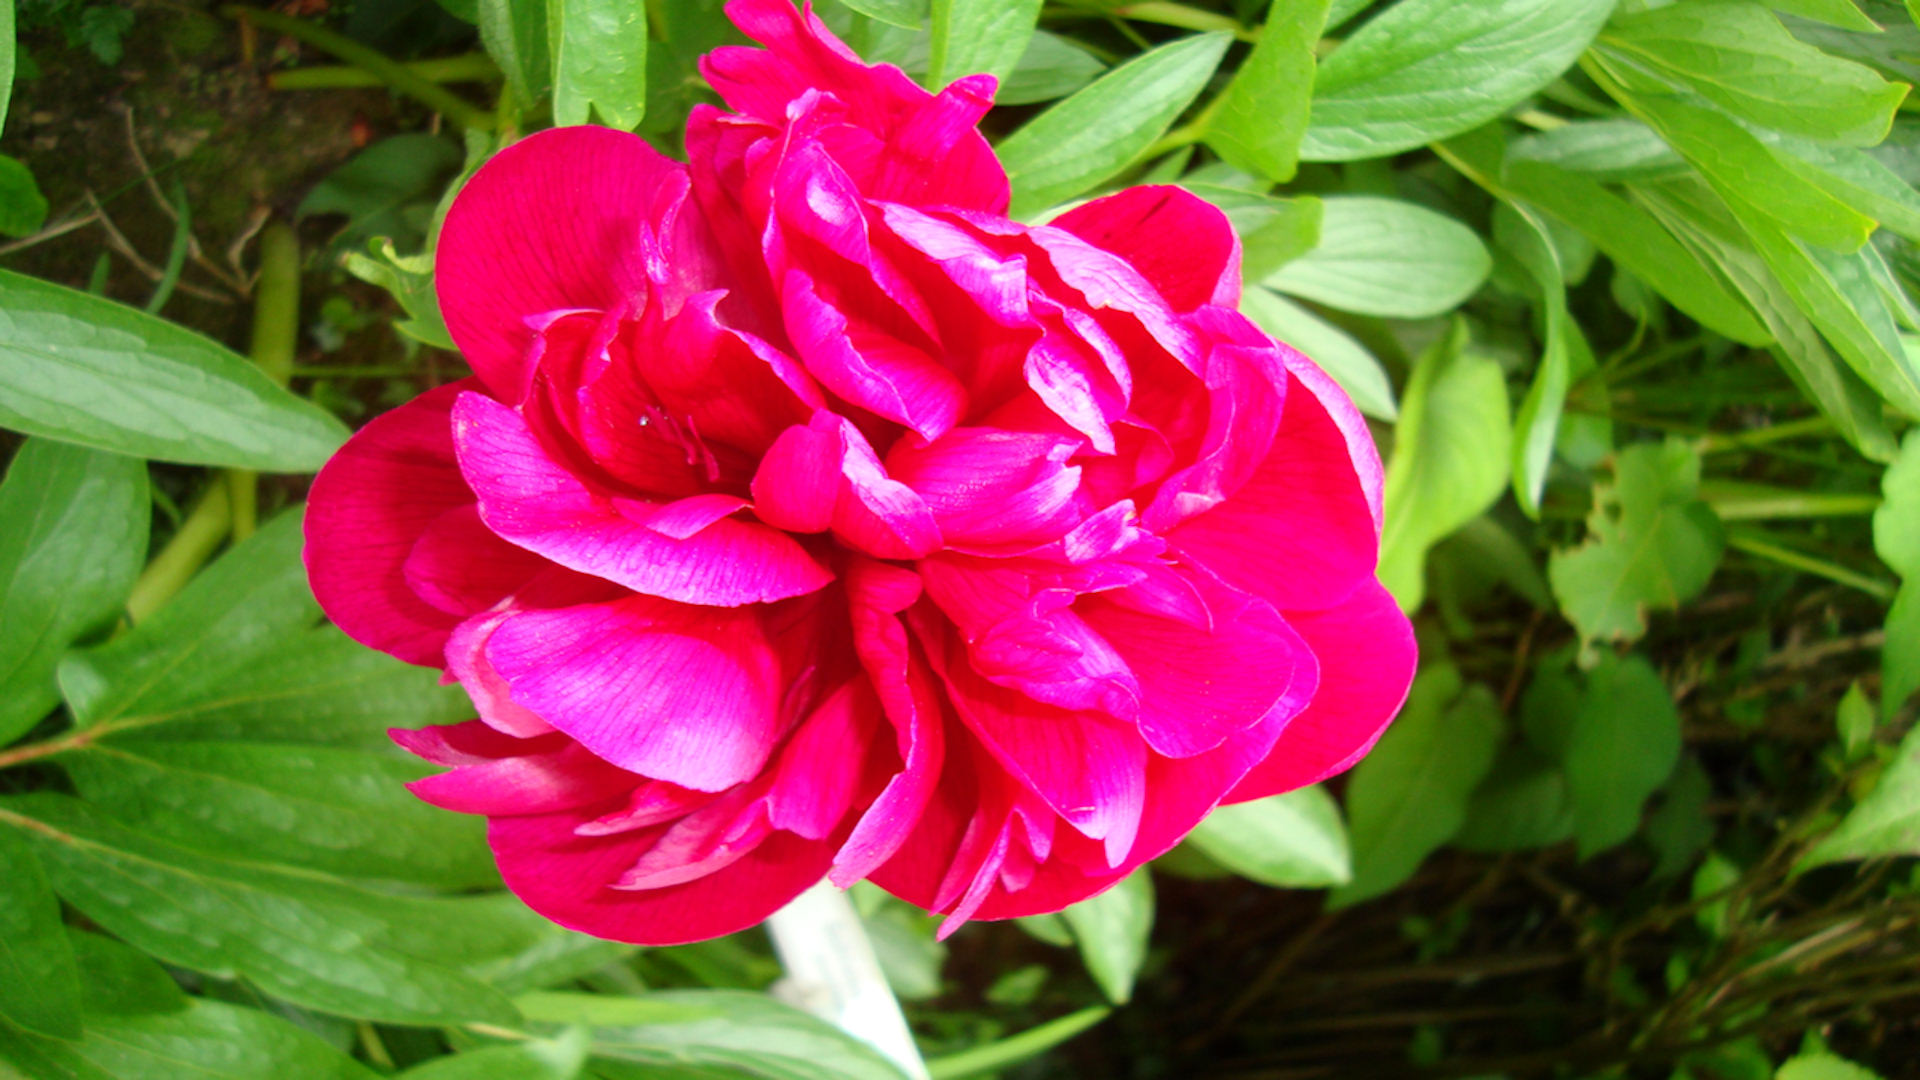 fond d'écran gratuit, photo de fleur de camelia rose vif (x)